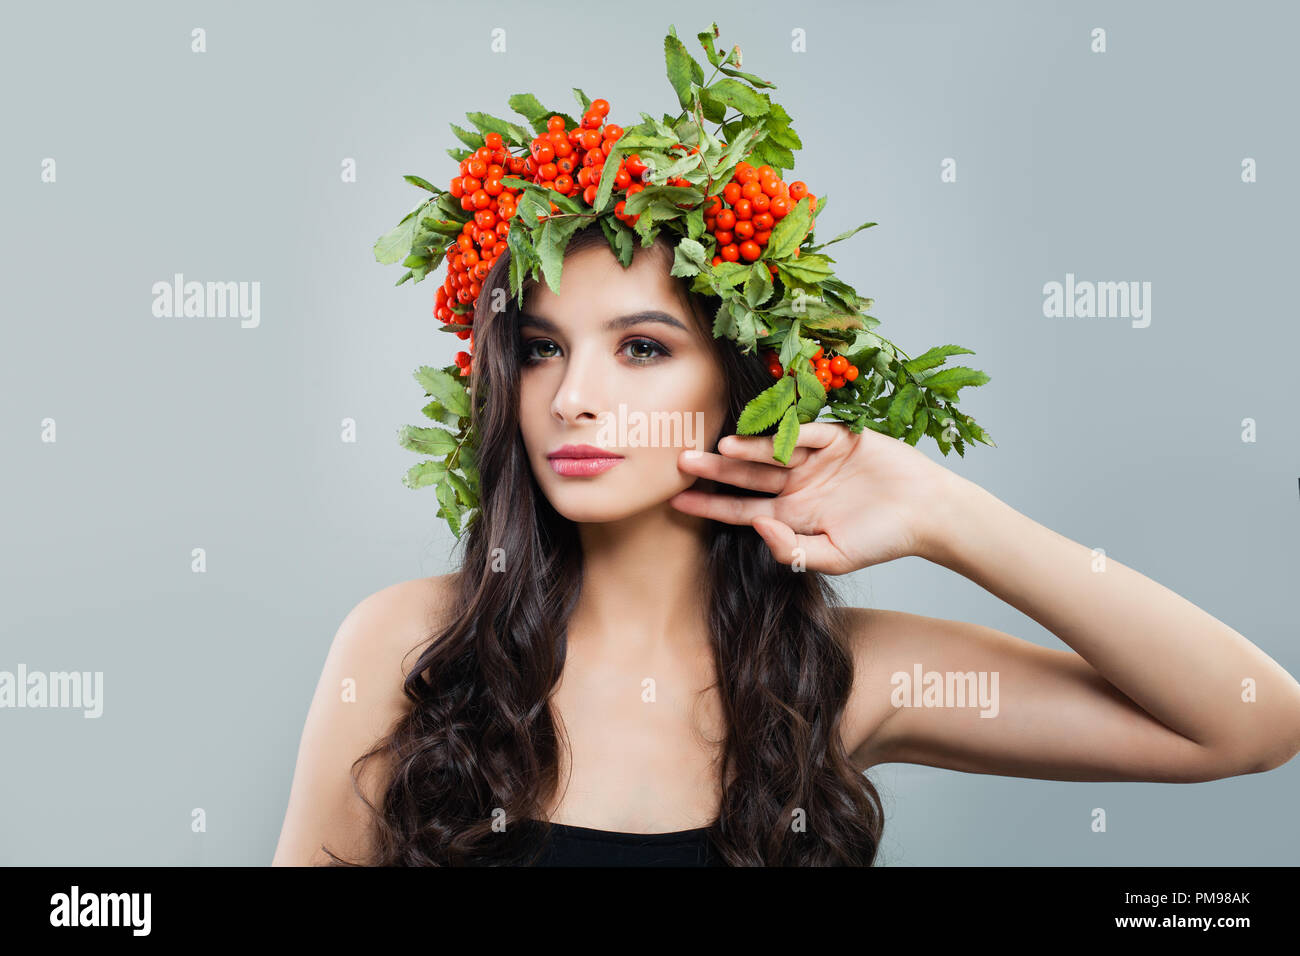 Schöne Frau mit gesunden lockiges Haar und natürliches Make up tragen in roten Beeren und grüne Blätter Kranz Stockfoto